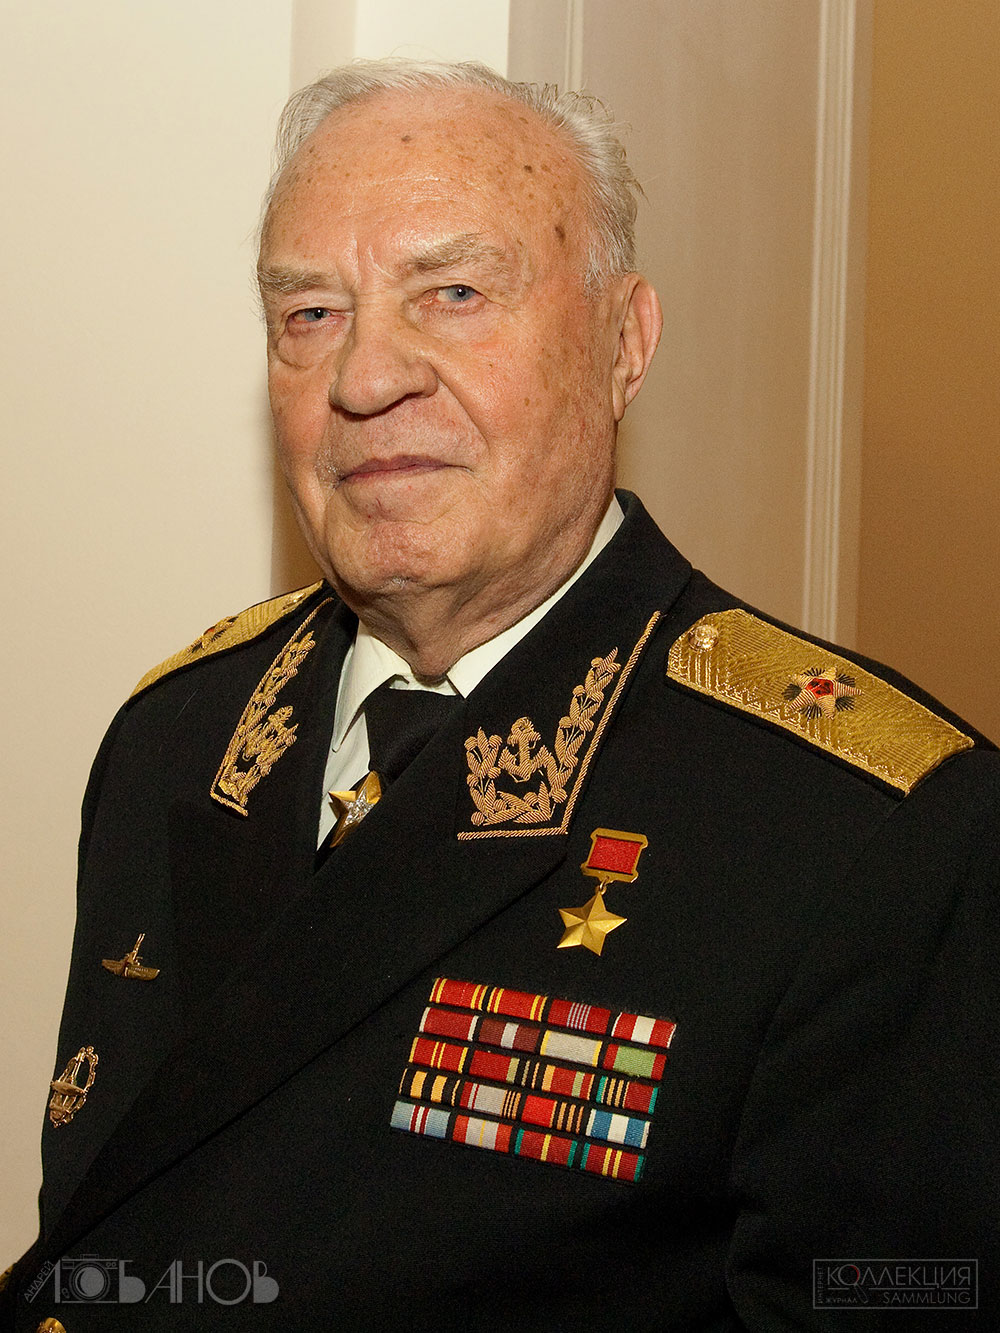 Владимир Николаевич Чернавин (22 апреля 1928 — 18 марта 2023), военачальник. Герой Советского Союза. Фото Андрея Лобанова